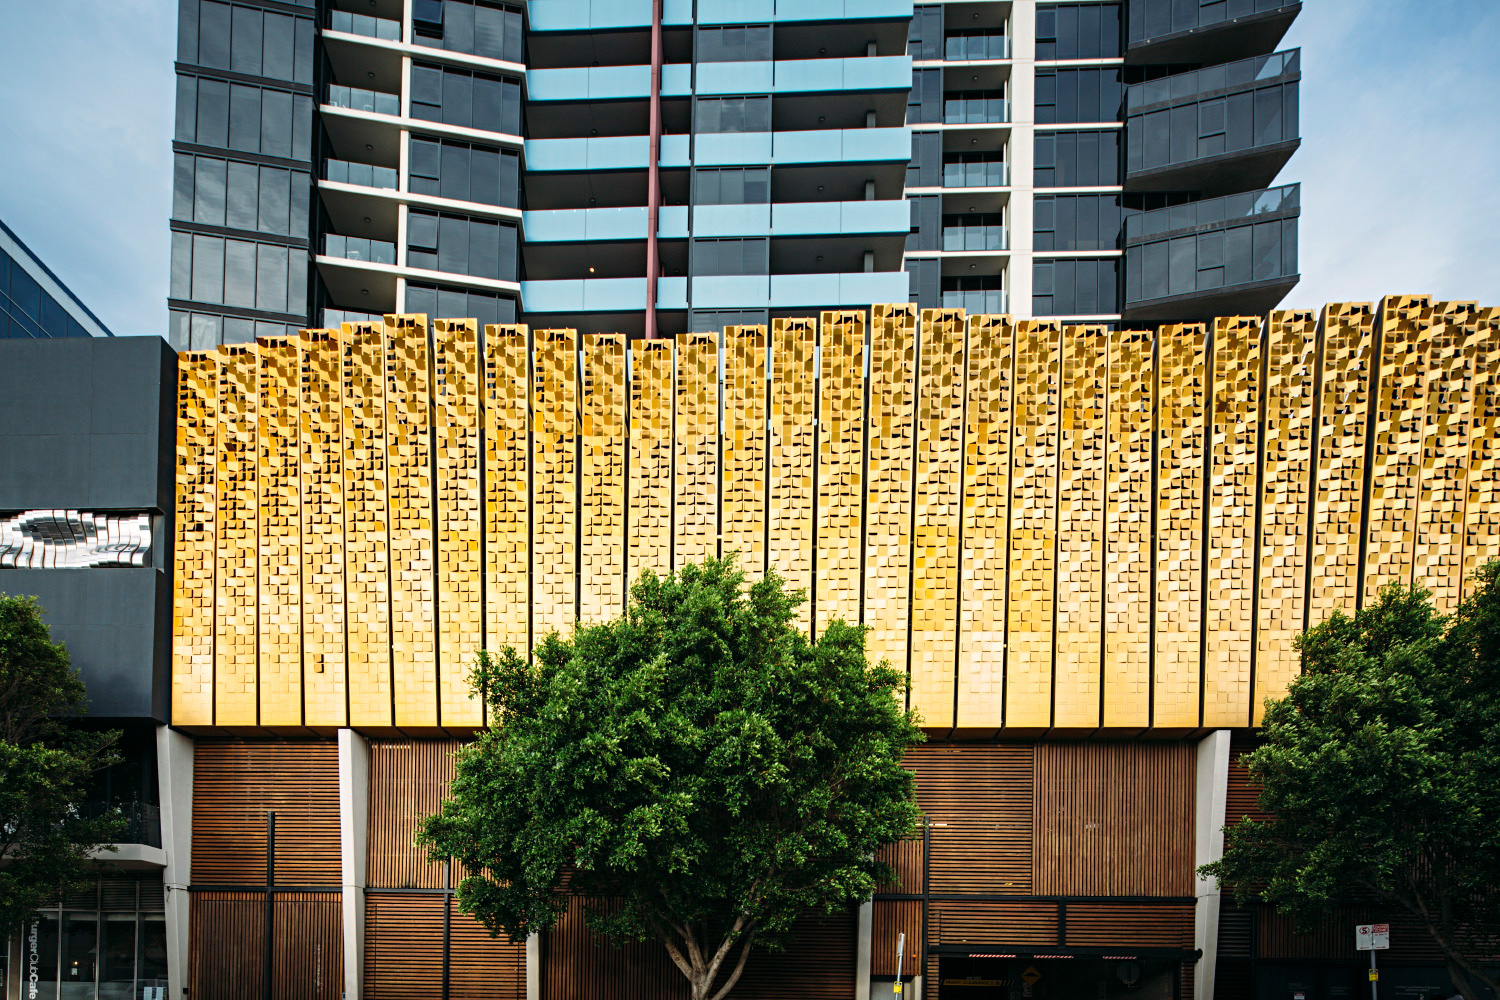 009-Melbourne-Architecture.jpg